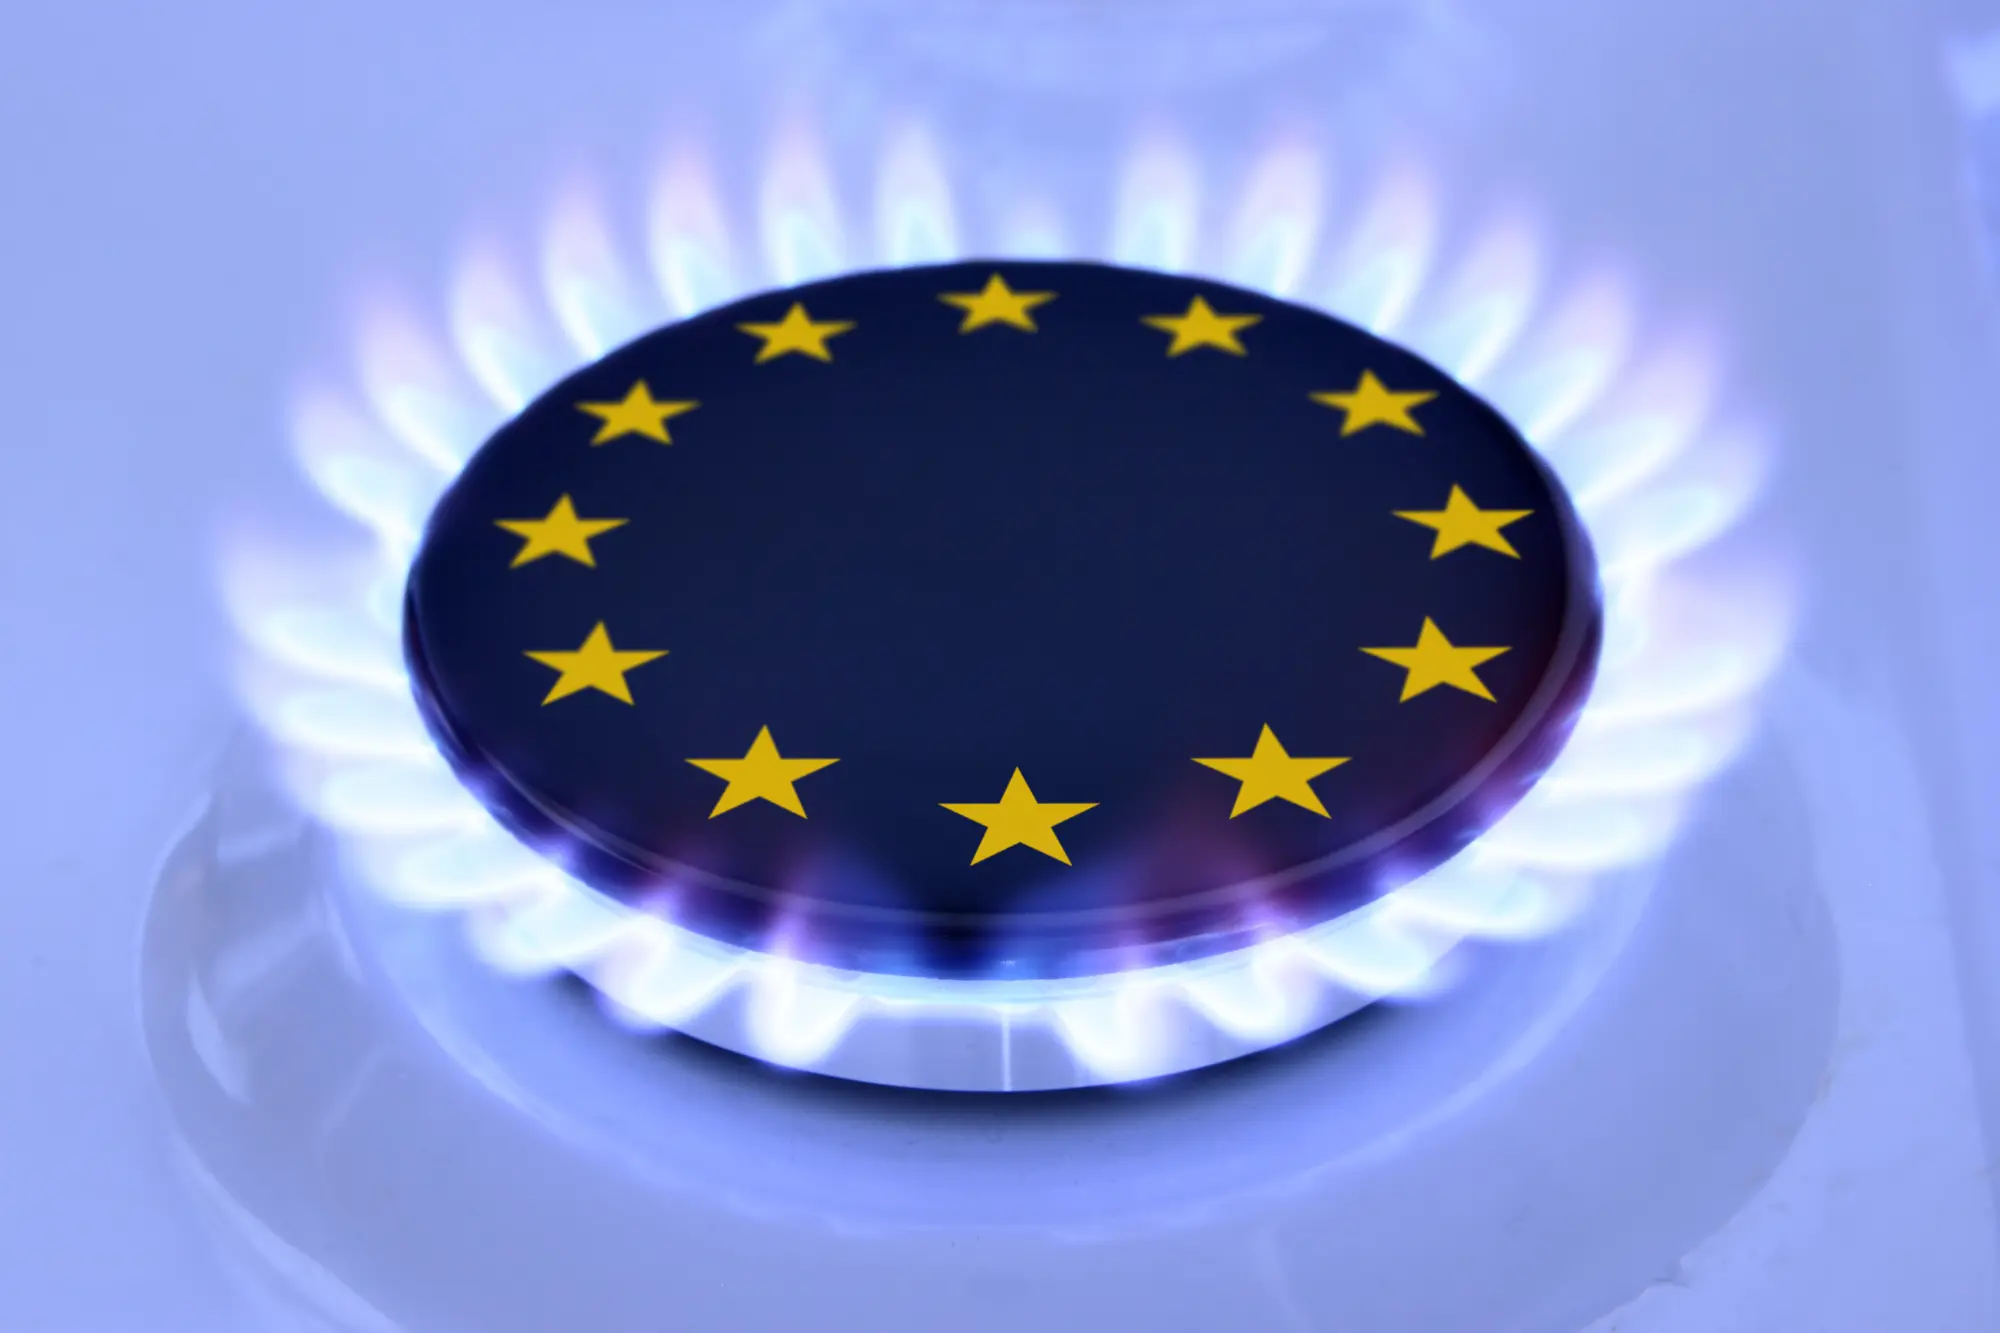 Commissione europea: "Il calo dei prezzi dell'energia stimola le prospettive di crescita dell'Ue"